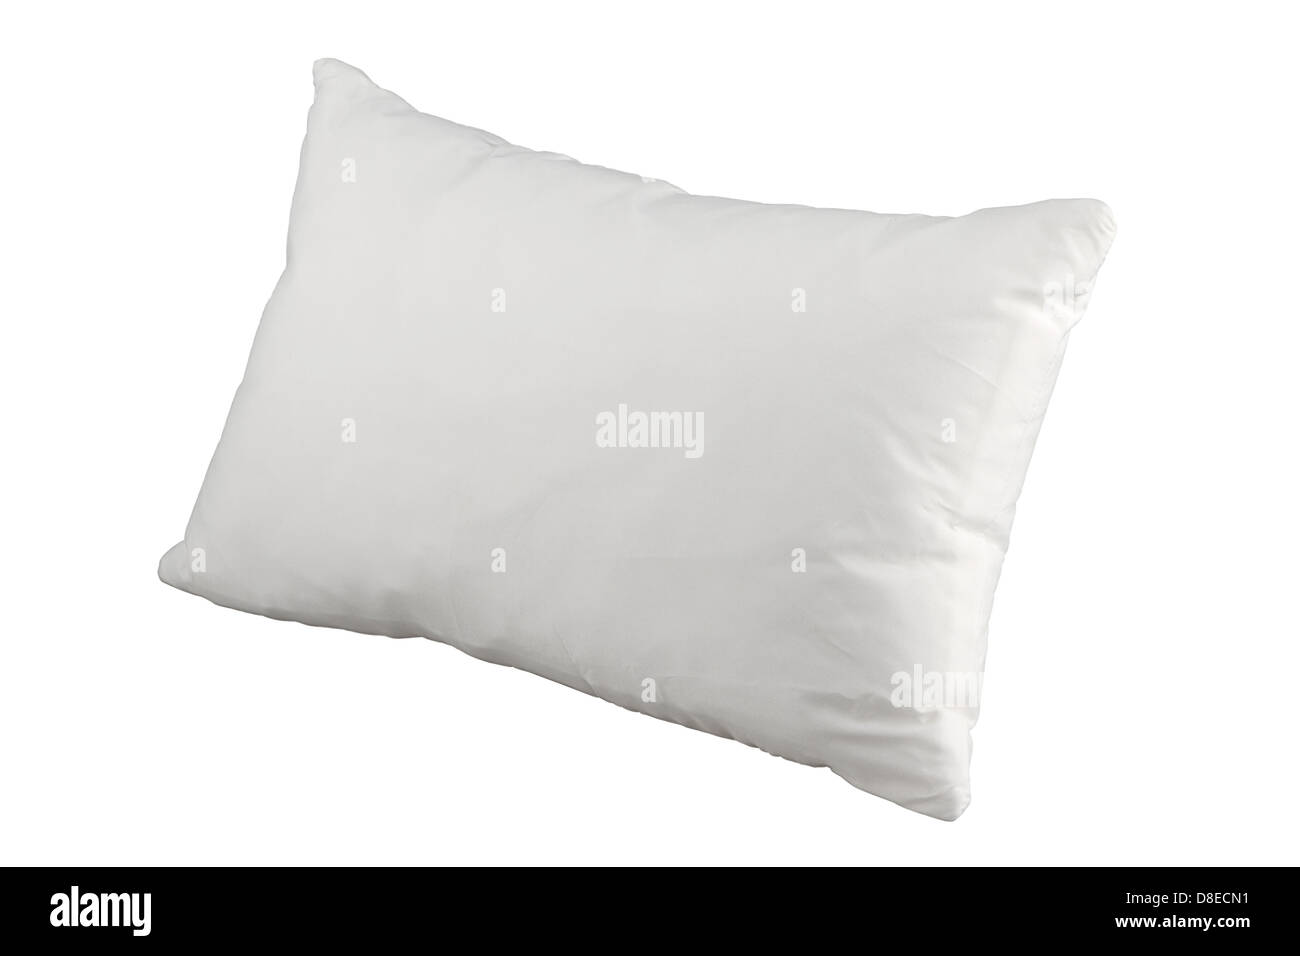 hygiene white pillow for better sleep Stock Photo